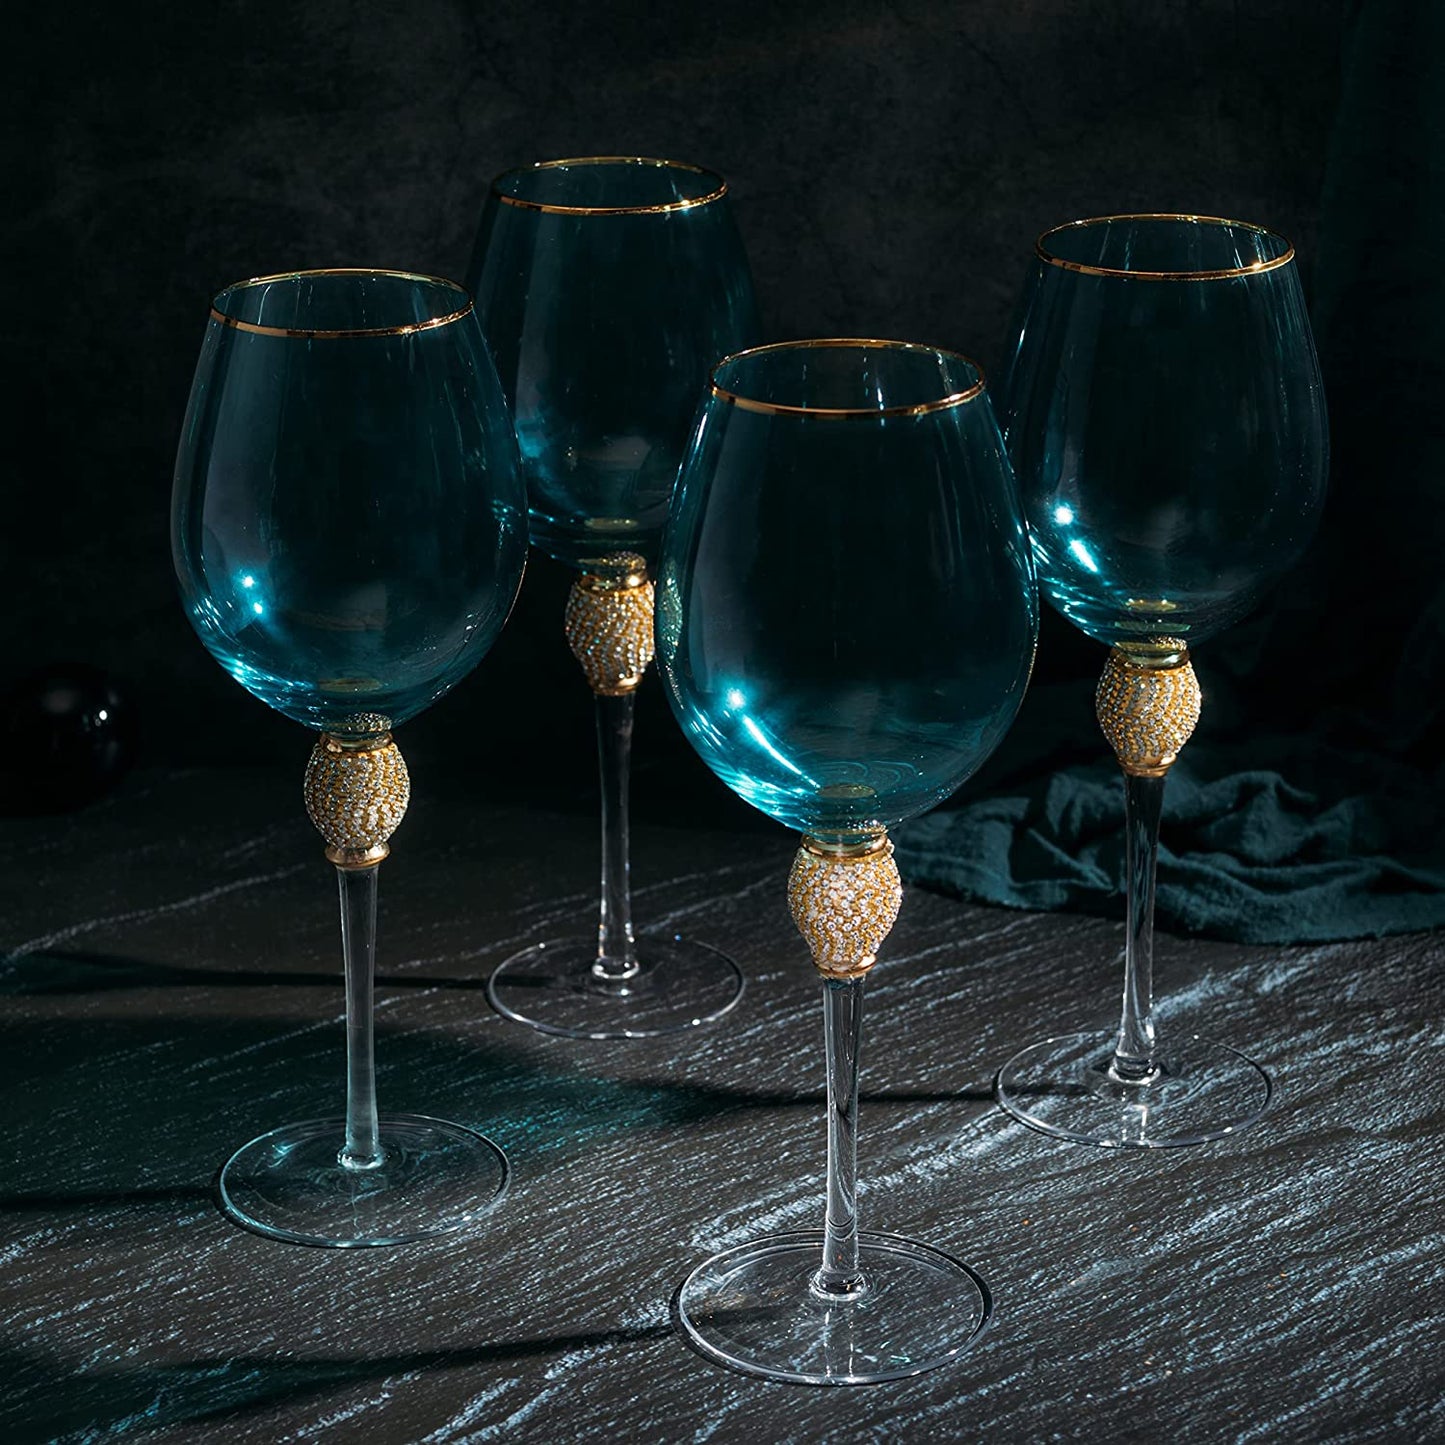 Set of 4 Blue Wine Glasses Gold Diamond Stemmed 14 oz by The Wine Savant -  Gold Rim Wine Glasses, Blue Colored Wine Glasses Luxury Wine Glassware Wine